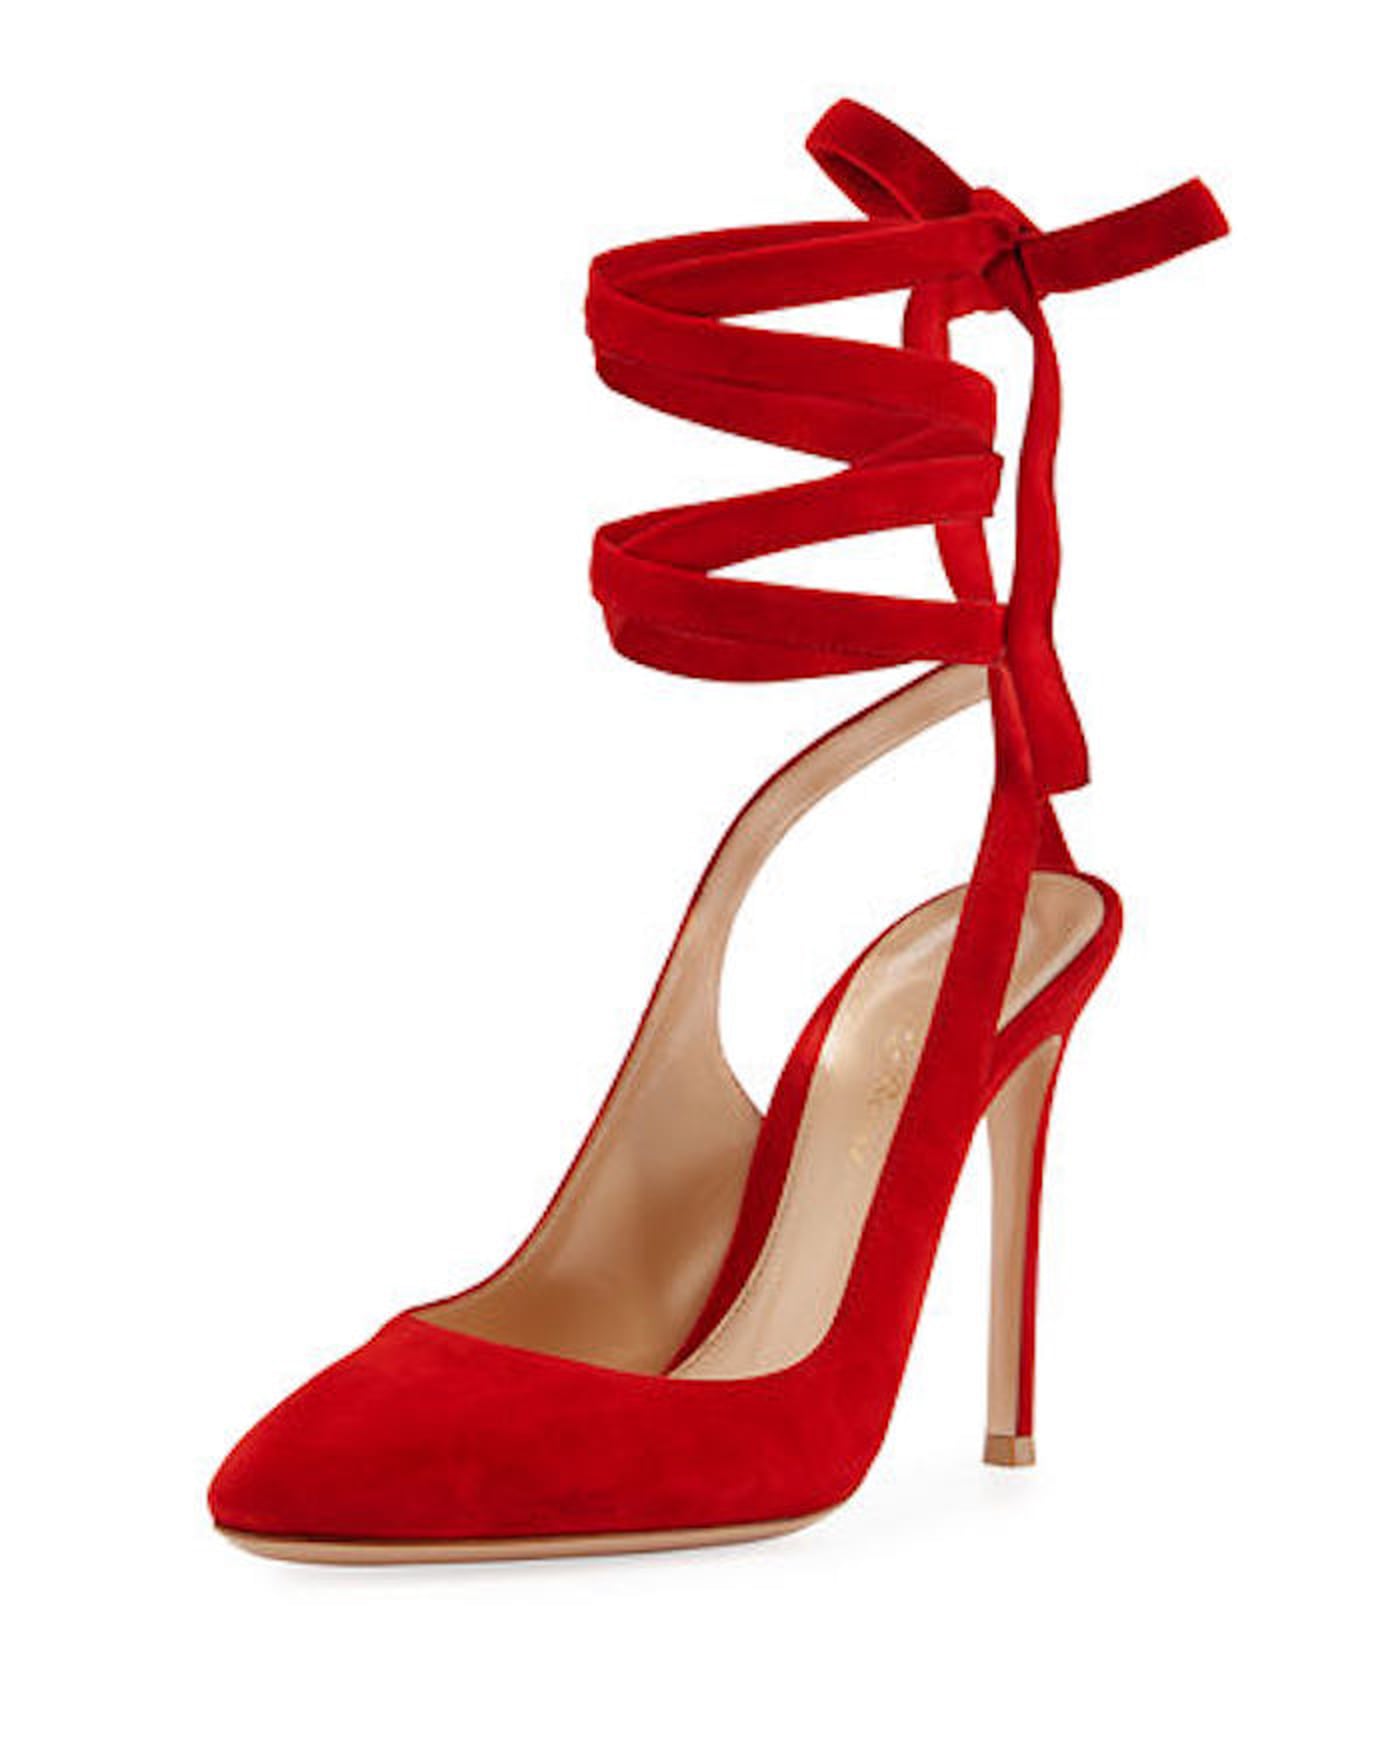 Queen Maxima's Red Gianvito Rossi Heels | POPSUGAR Fashion